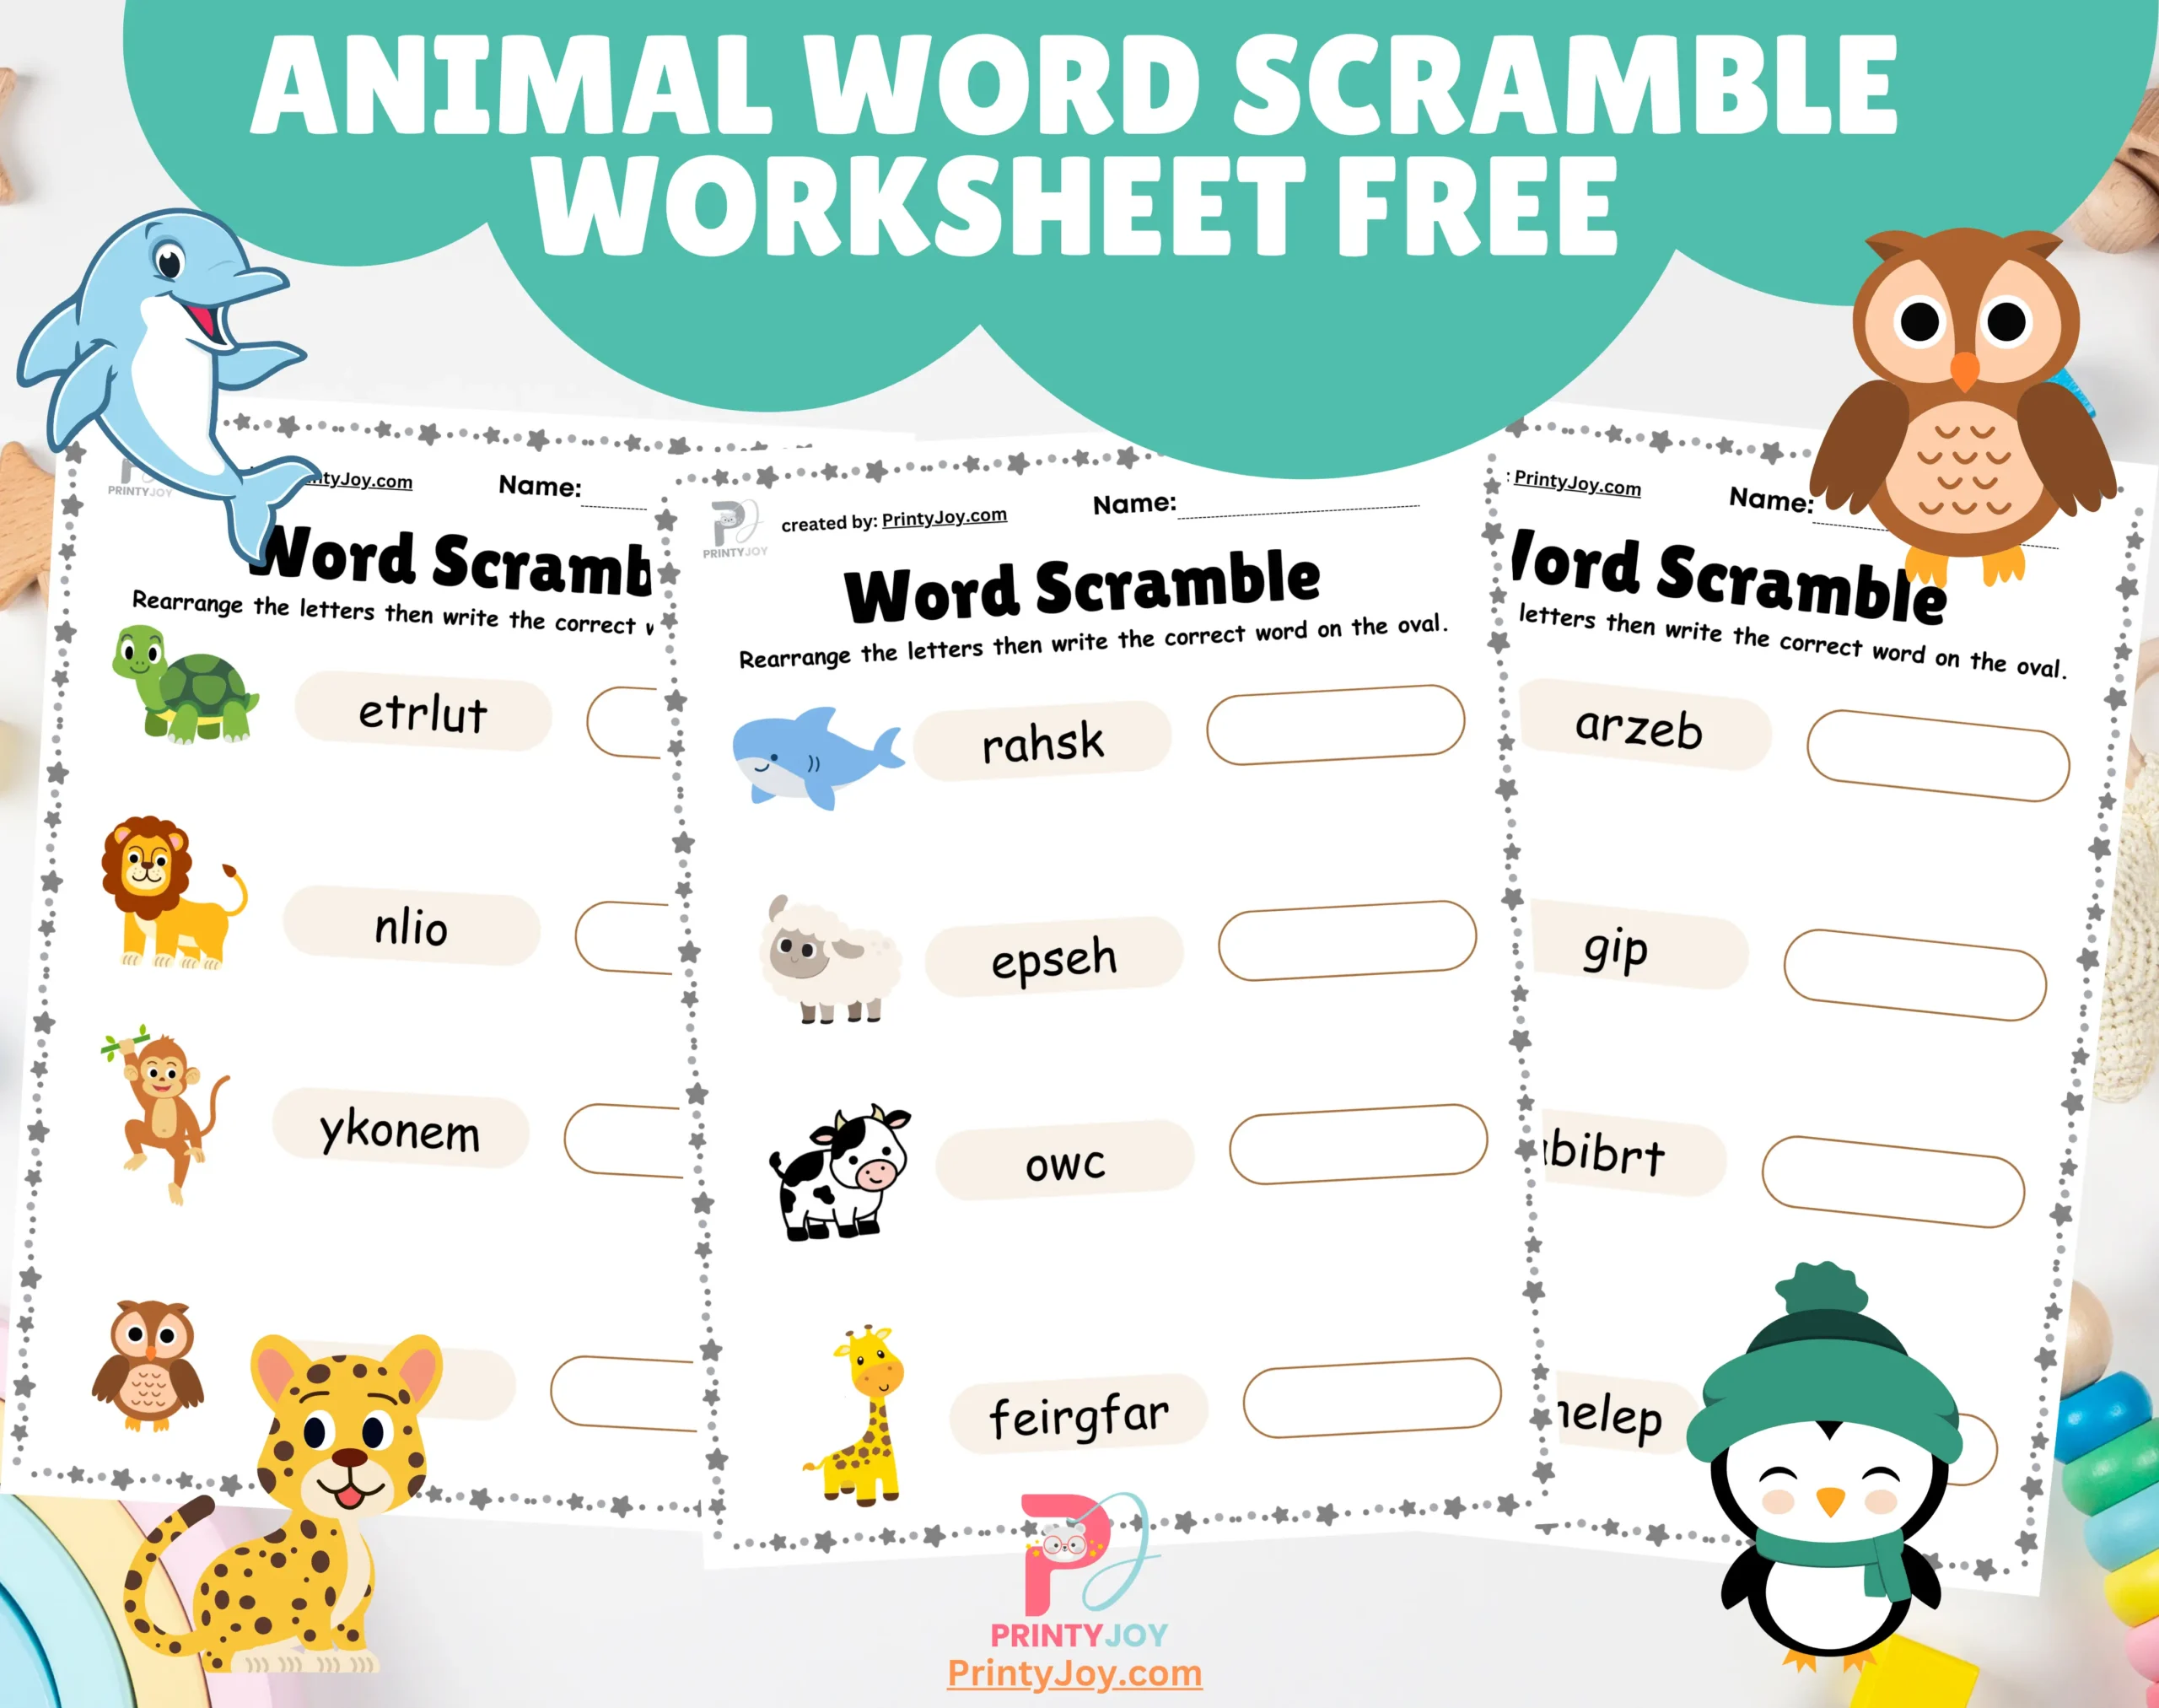 Animal Word Scramble Worksheet Free